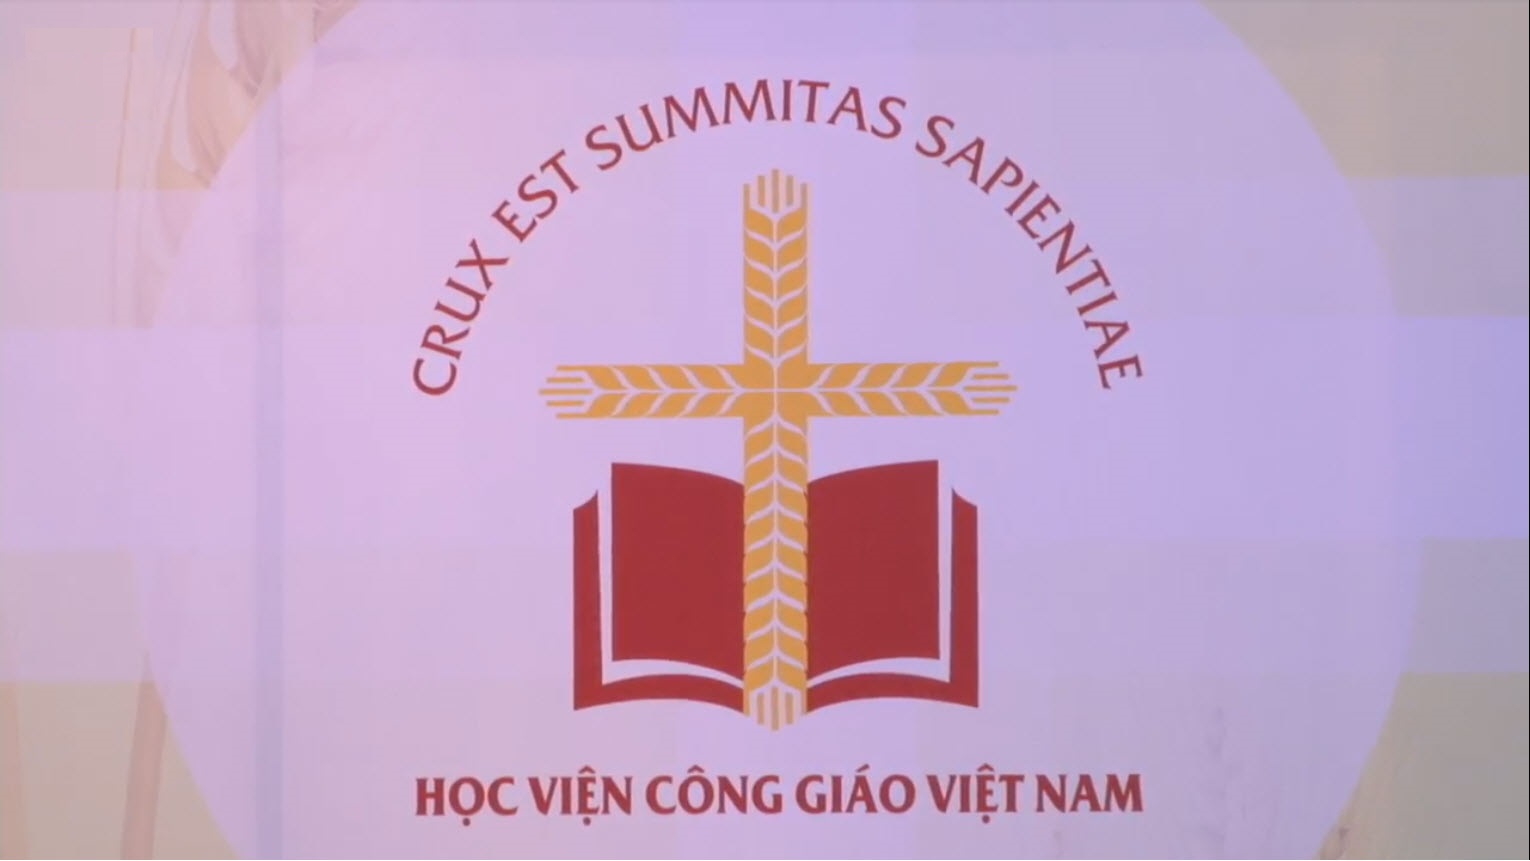 Học viện Công giáo Việt Nam: Thông báo dời ngày khai giảng chương trình ngoại ngữ năm 2021